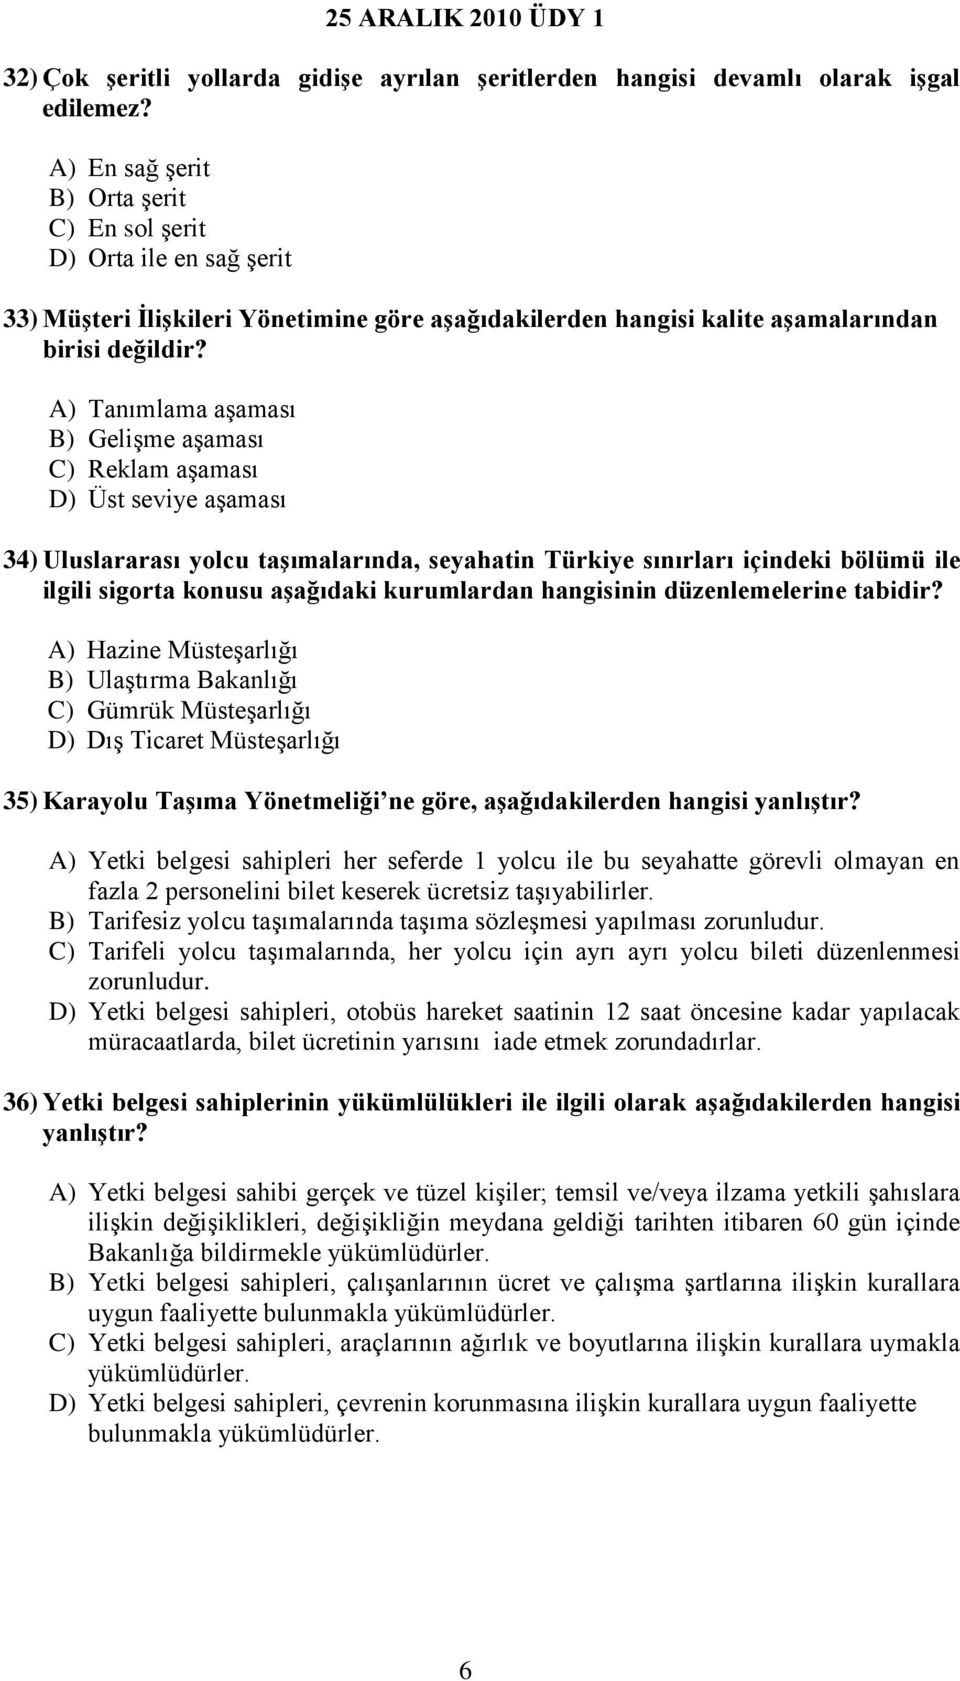 A) Tanımlama aşaması B) Gelişme aşaması C) Reklam aşaması D) Üst seviye aşaması 34) Uluslararası yolcu taşımalarında, seyahatin Türkiye sınırları içindeki bölümü ile ilgili sigorta konusu aşağıdaki